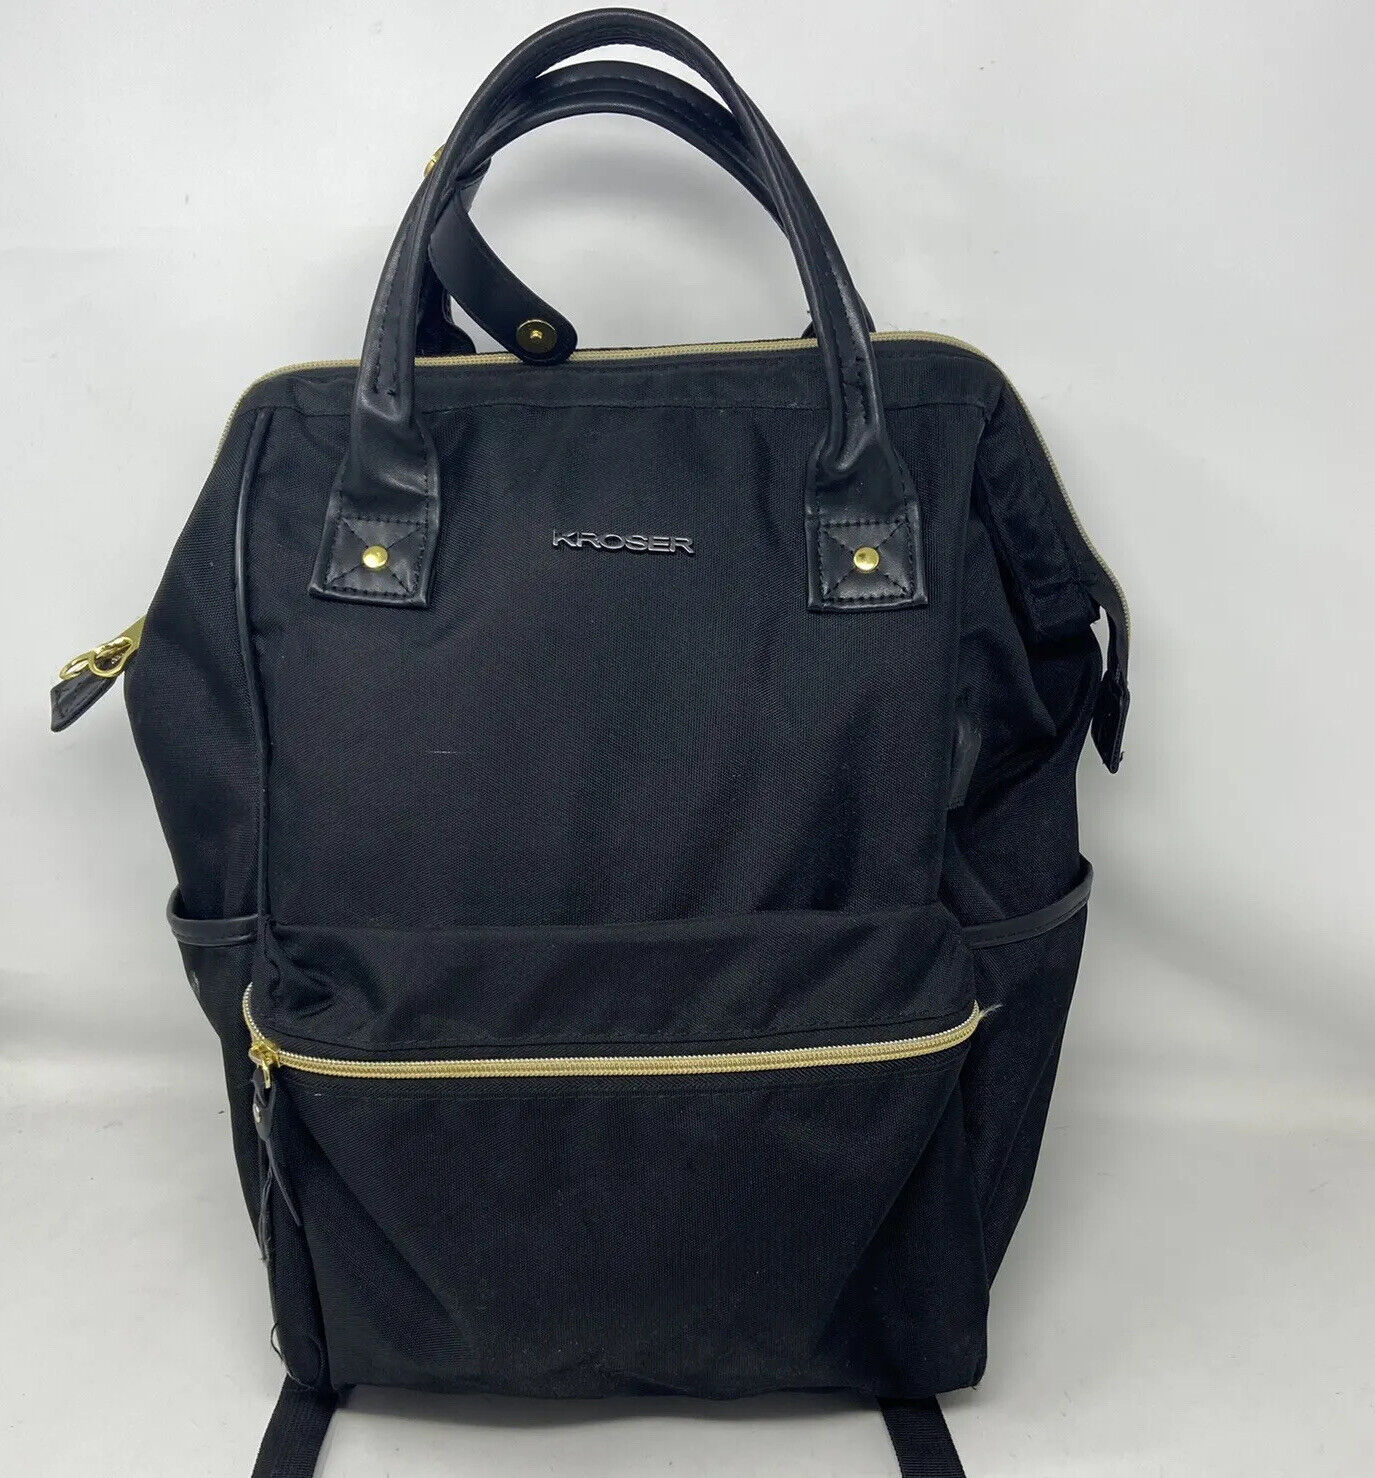 Kroser Black Backpack Laptop Bag RFID Pockets Gold Zippers